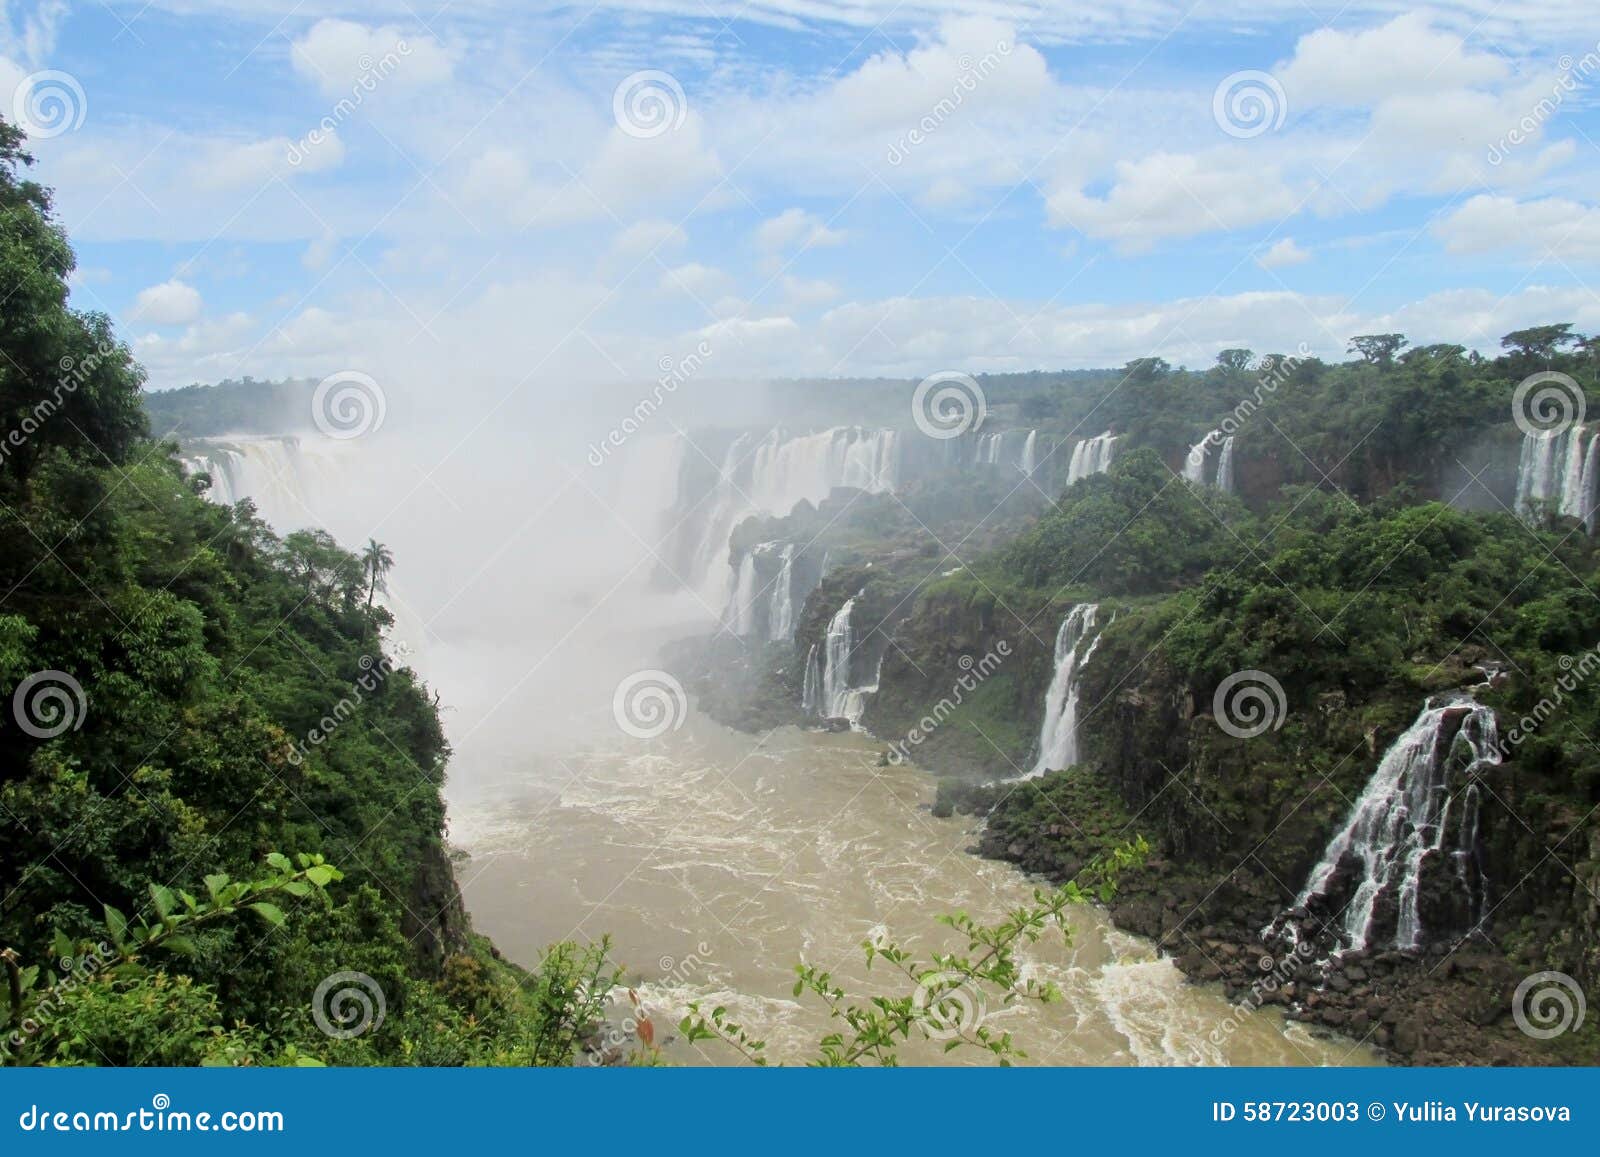 cataratas del iguazu, iguassu waterfall panorama